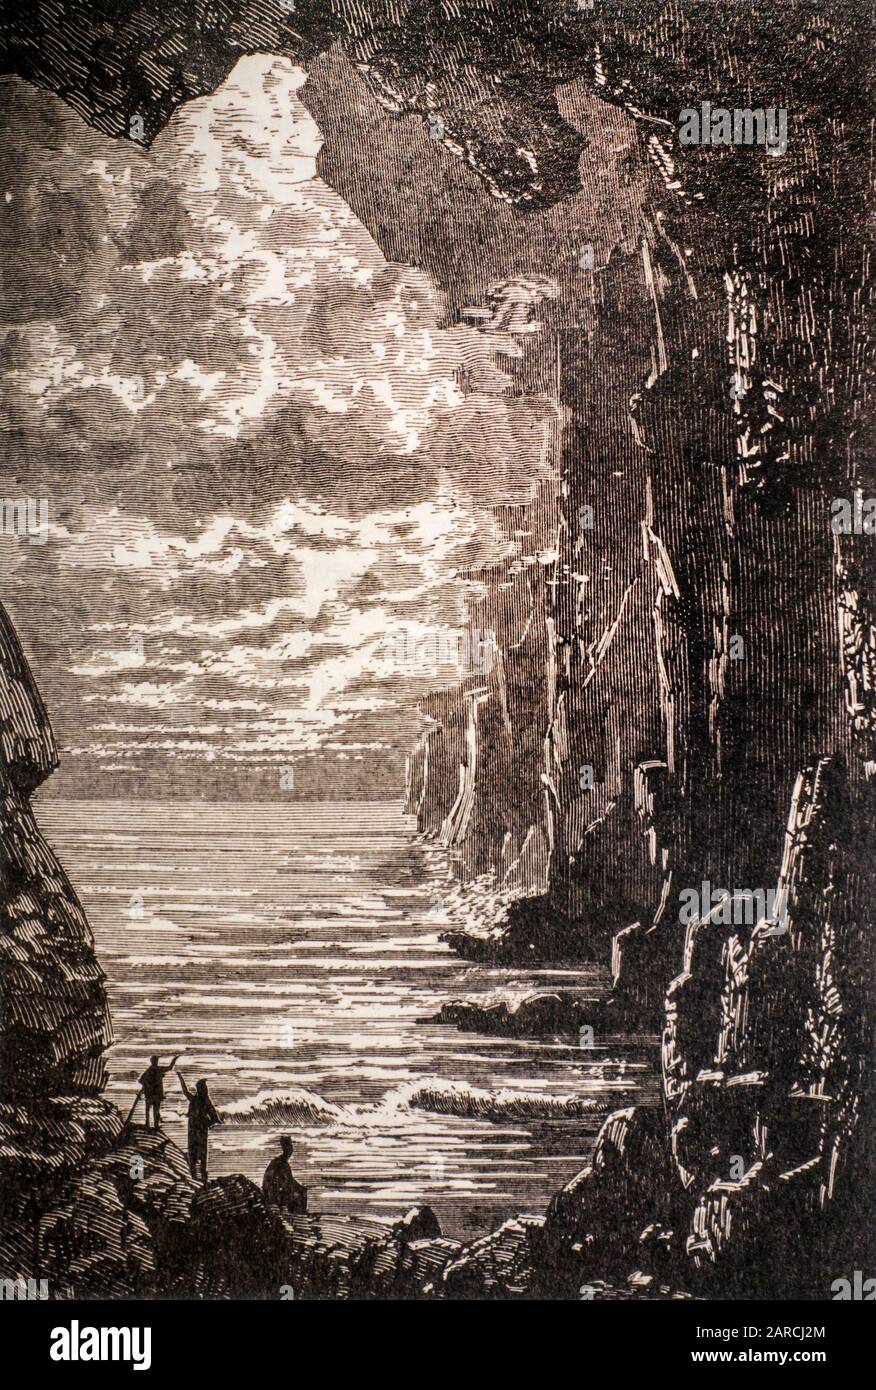 1864 Buchillustration Das Zentralmeer vom Science-Fiction-Roman Reise zum Zentrum der Erde durch den französischen Schriftsteller/Romanautor Jules Verne Stockfoto